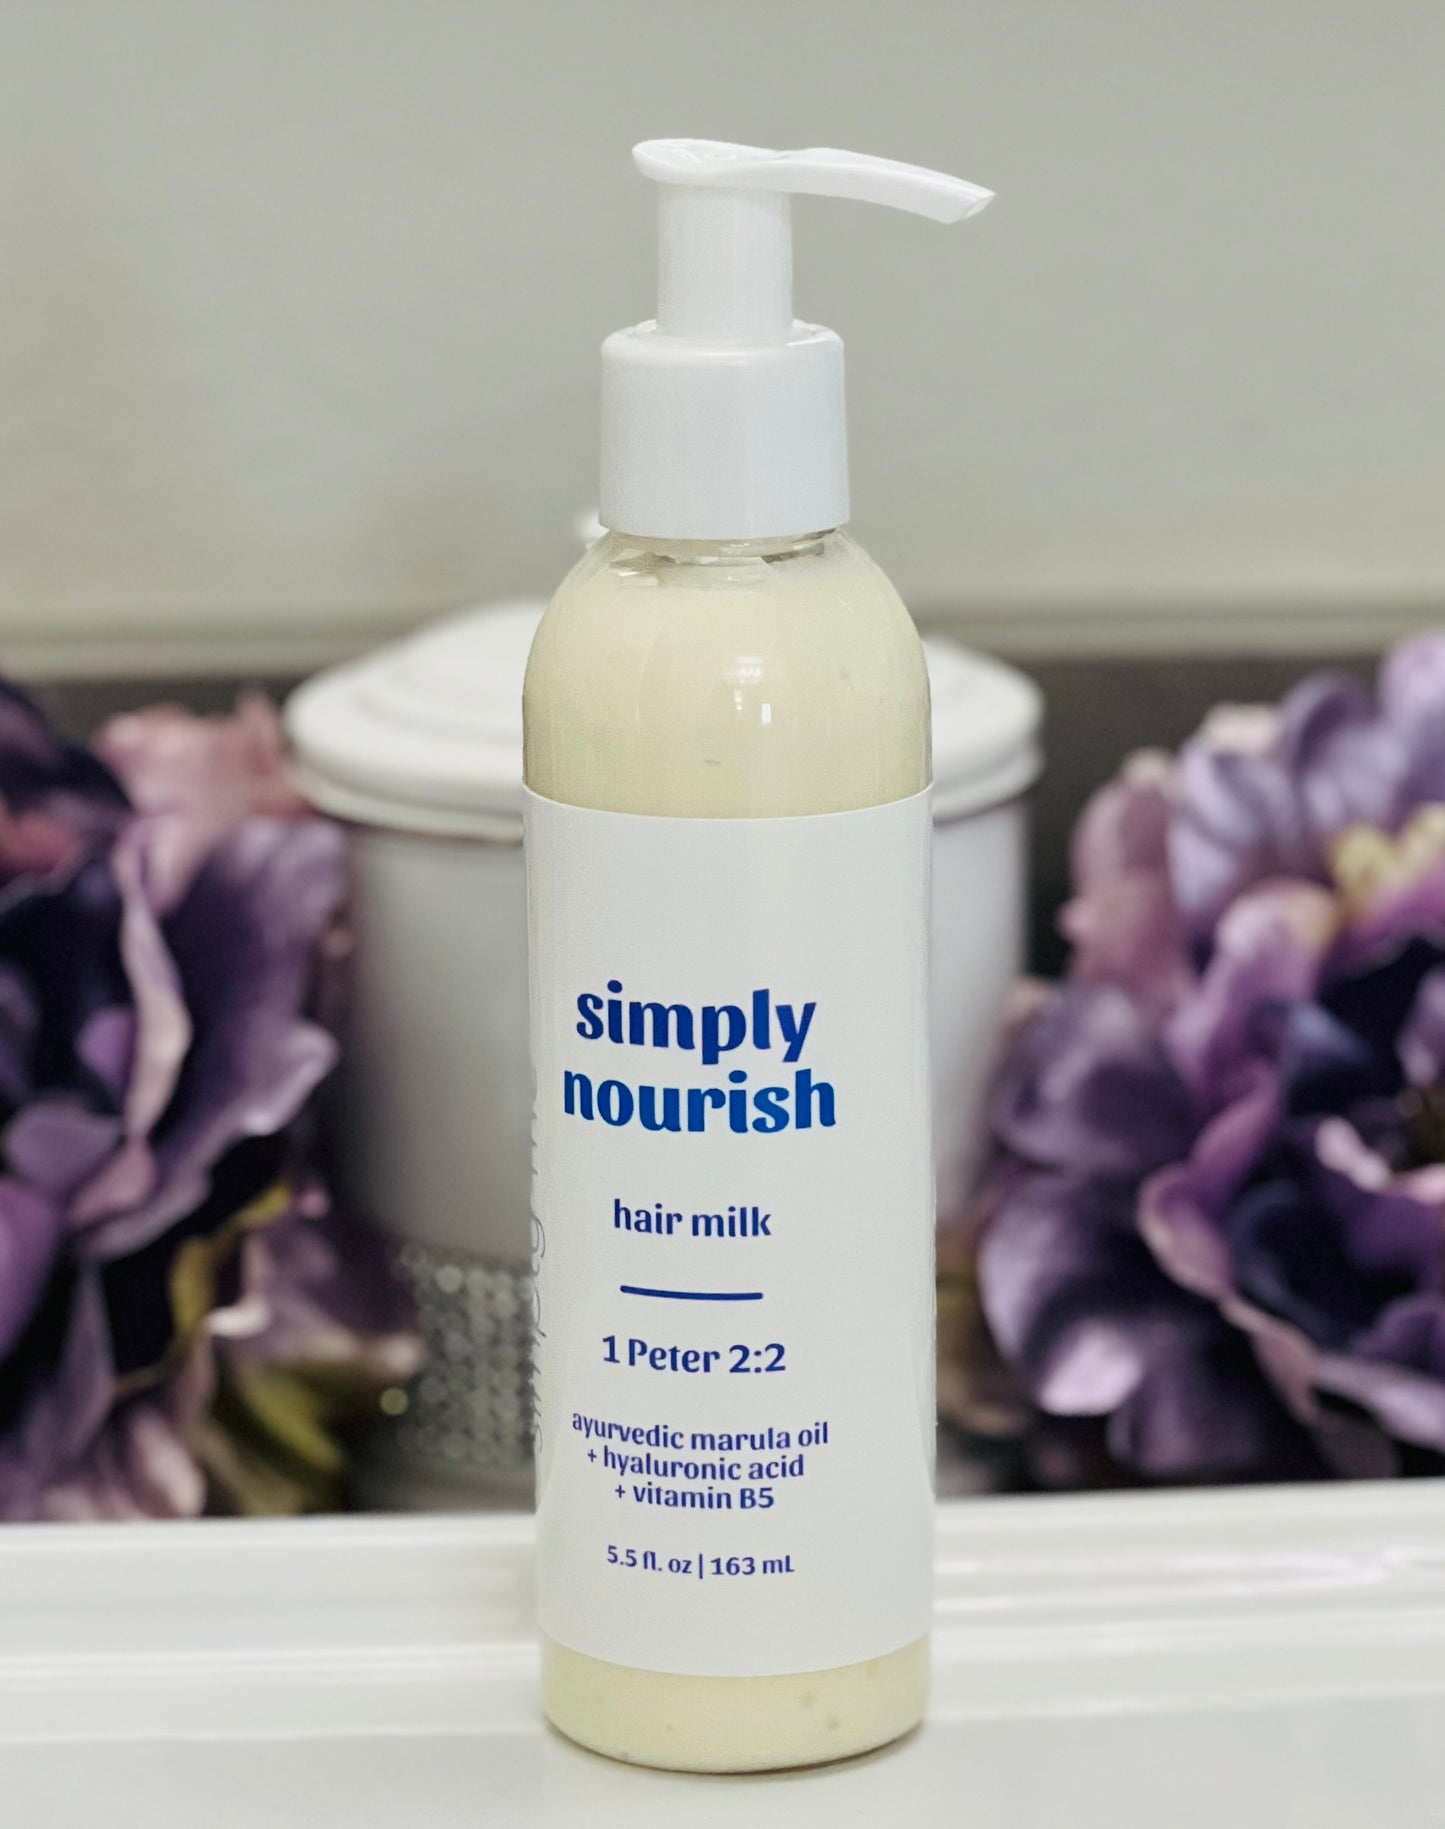 simply nourish hair milk